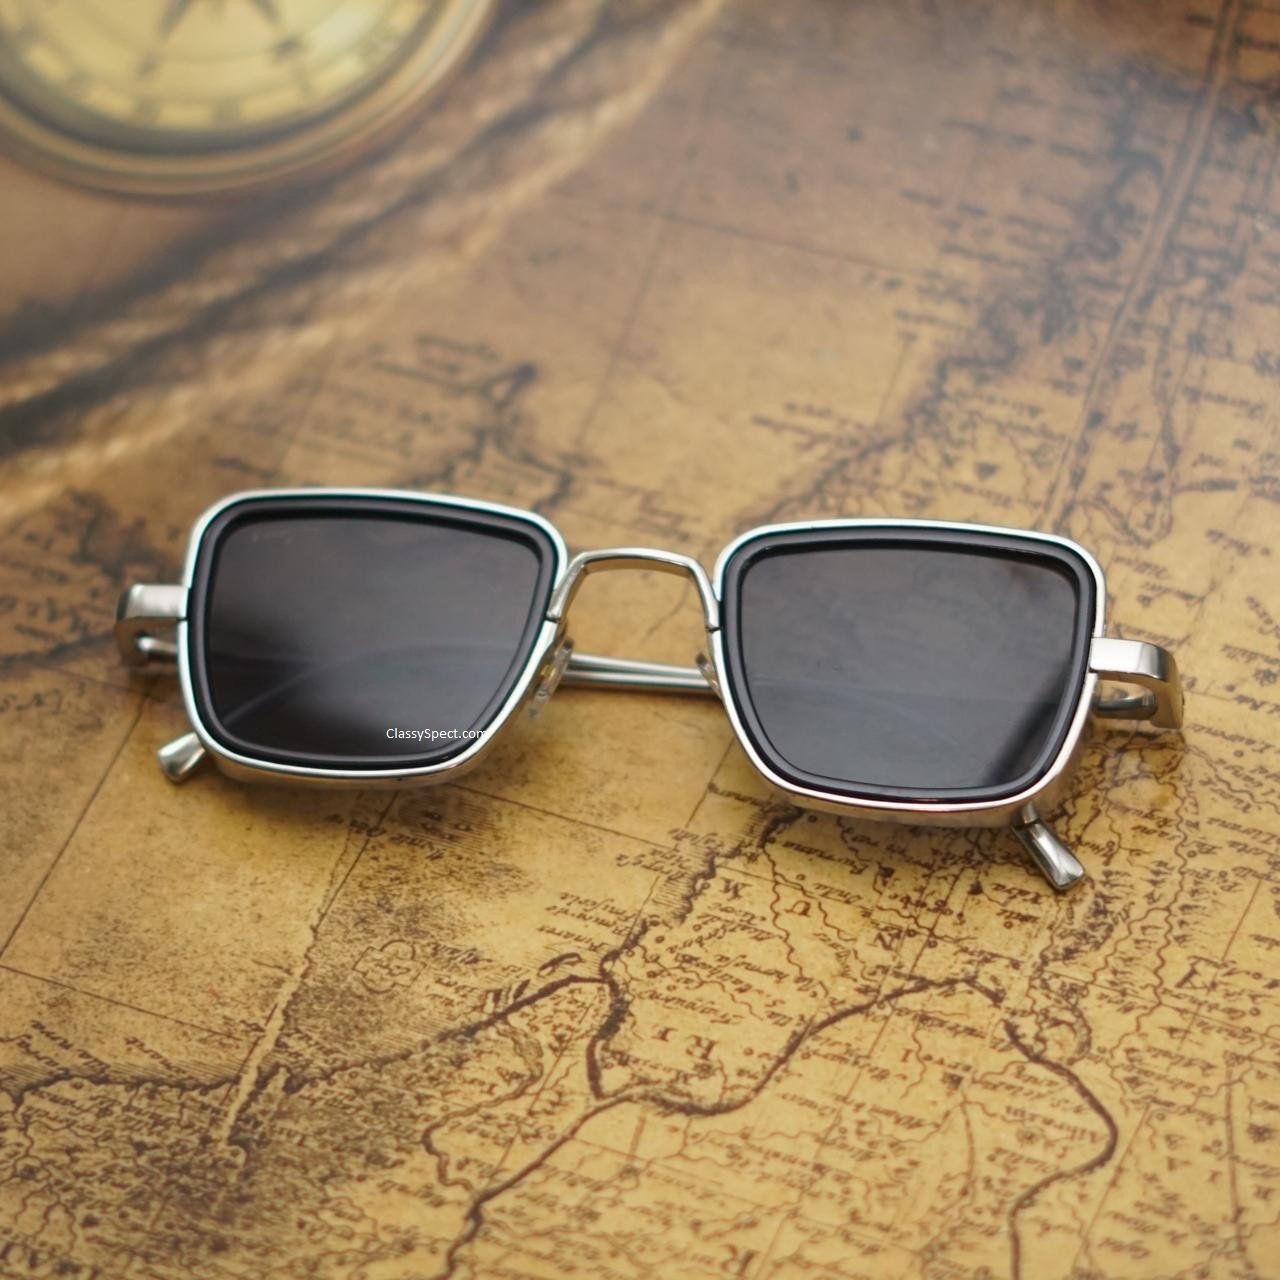 Classy Black And Silver Retro Square Sunglasses